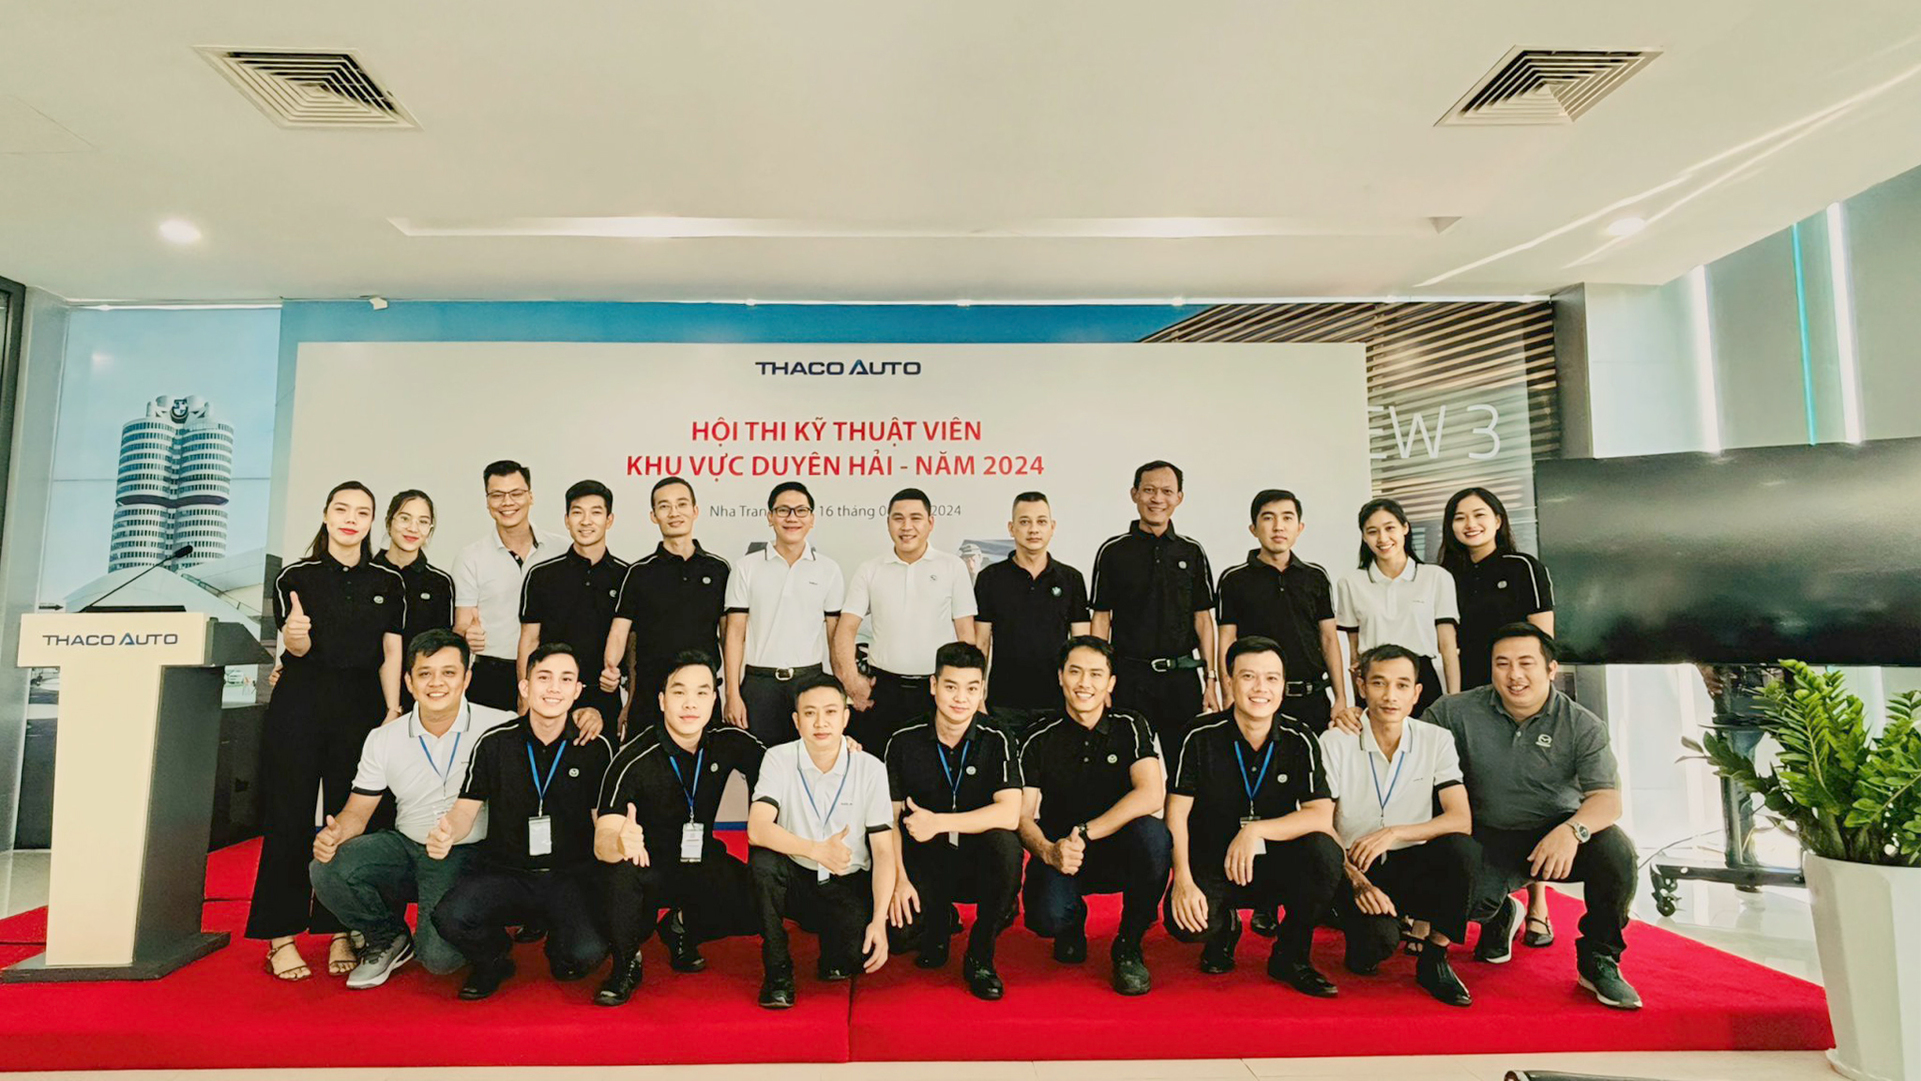 THACO AUTO tổ chức Hội thi “Kỹ thuật viên Khu vực Duyên Hải”